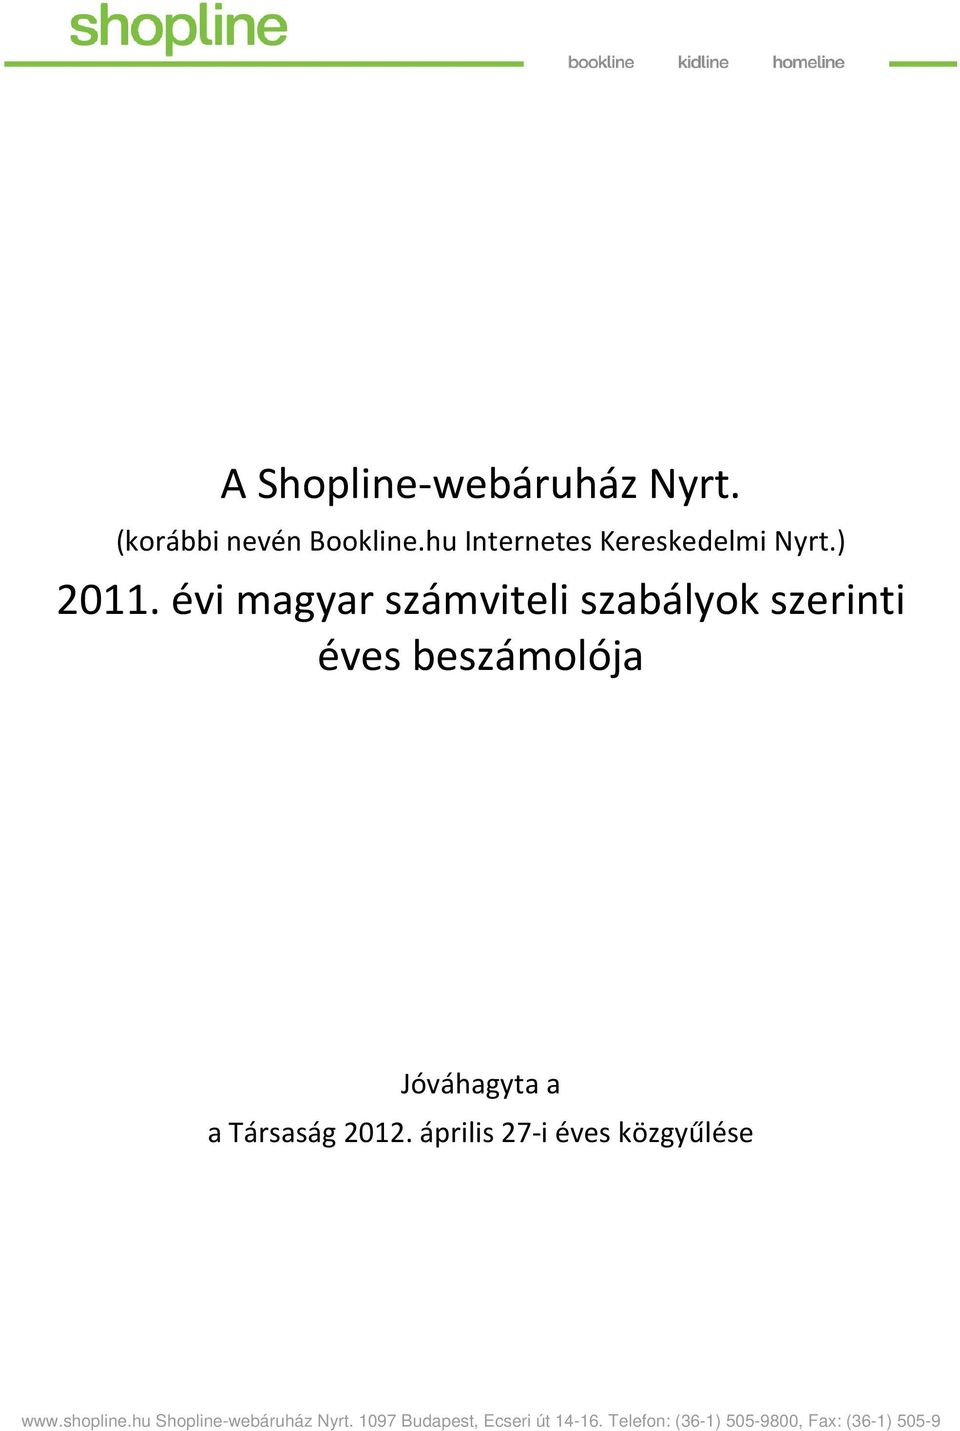 a a Társaság 2012. április 27-i éves közgyűlése www.shopline.hu.